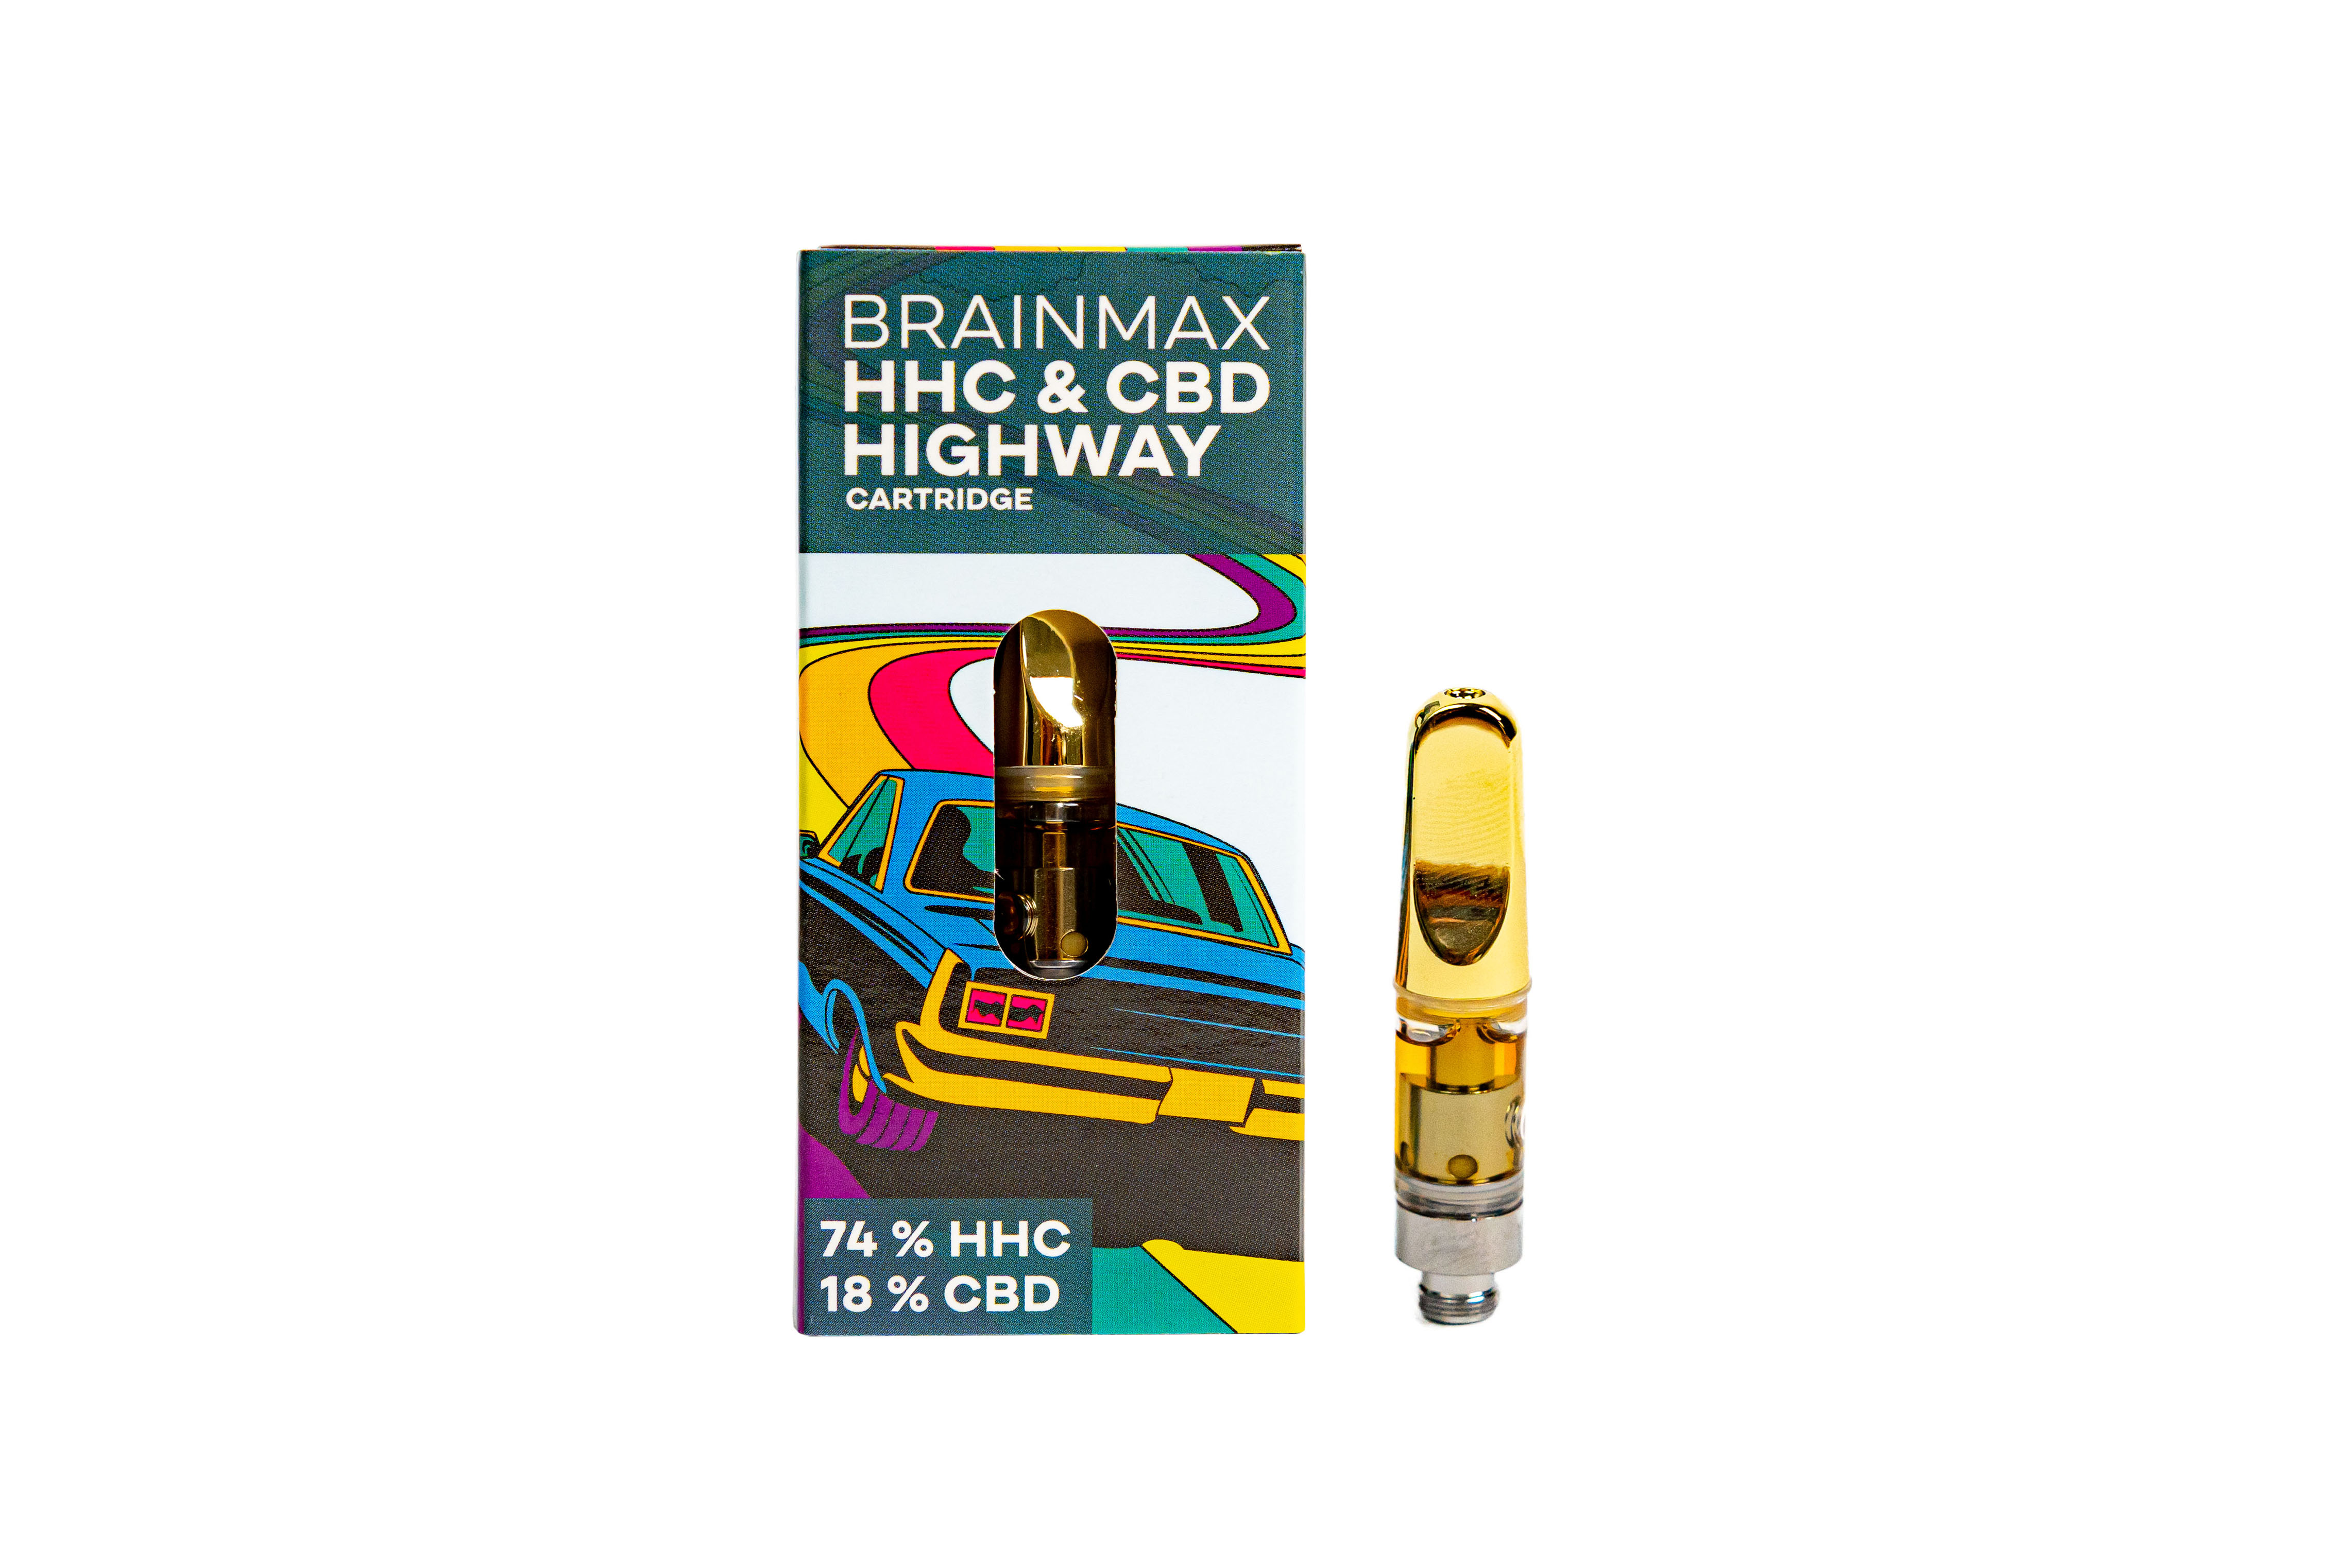 BrainMax HáHáCé Cartridge HIGHWAY, náplň do CéBéDé Pen Vaporizéru, 0,5 ml, 74% HáHáCé, 18% CéBéDé, pro sběratelské účely